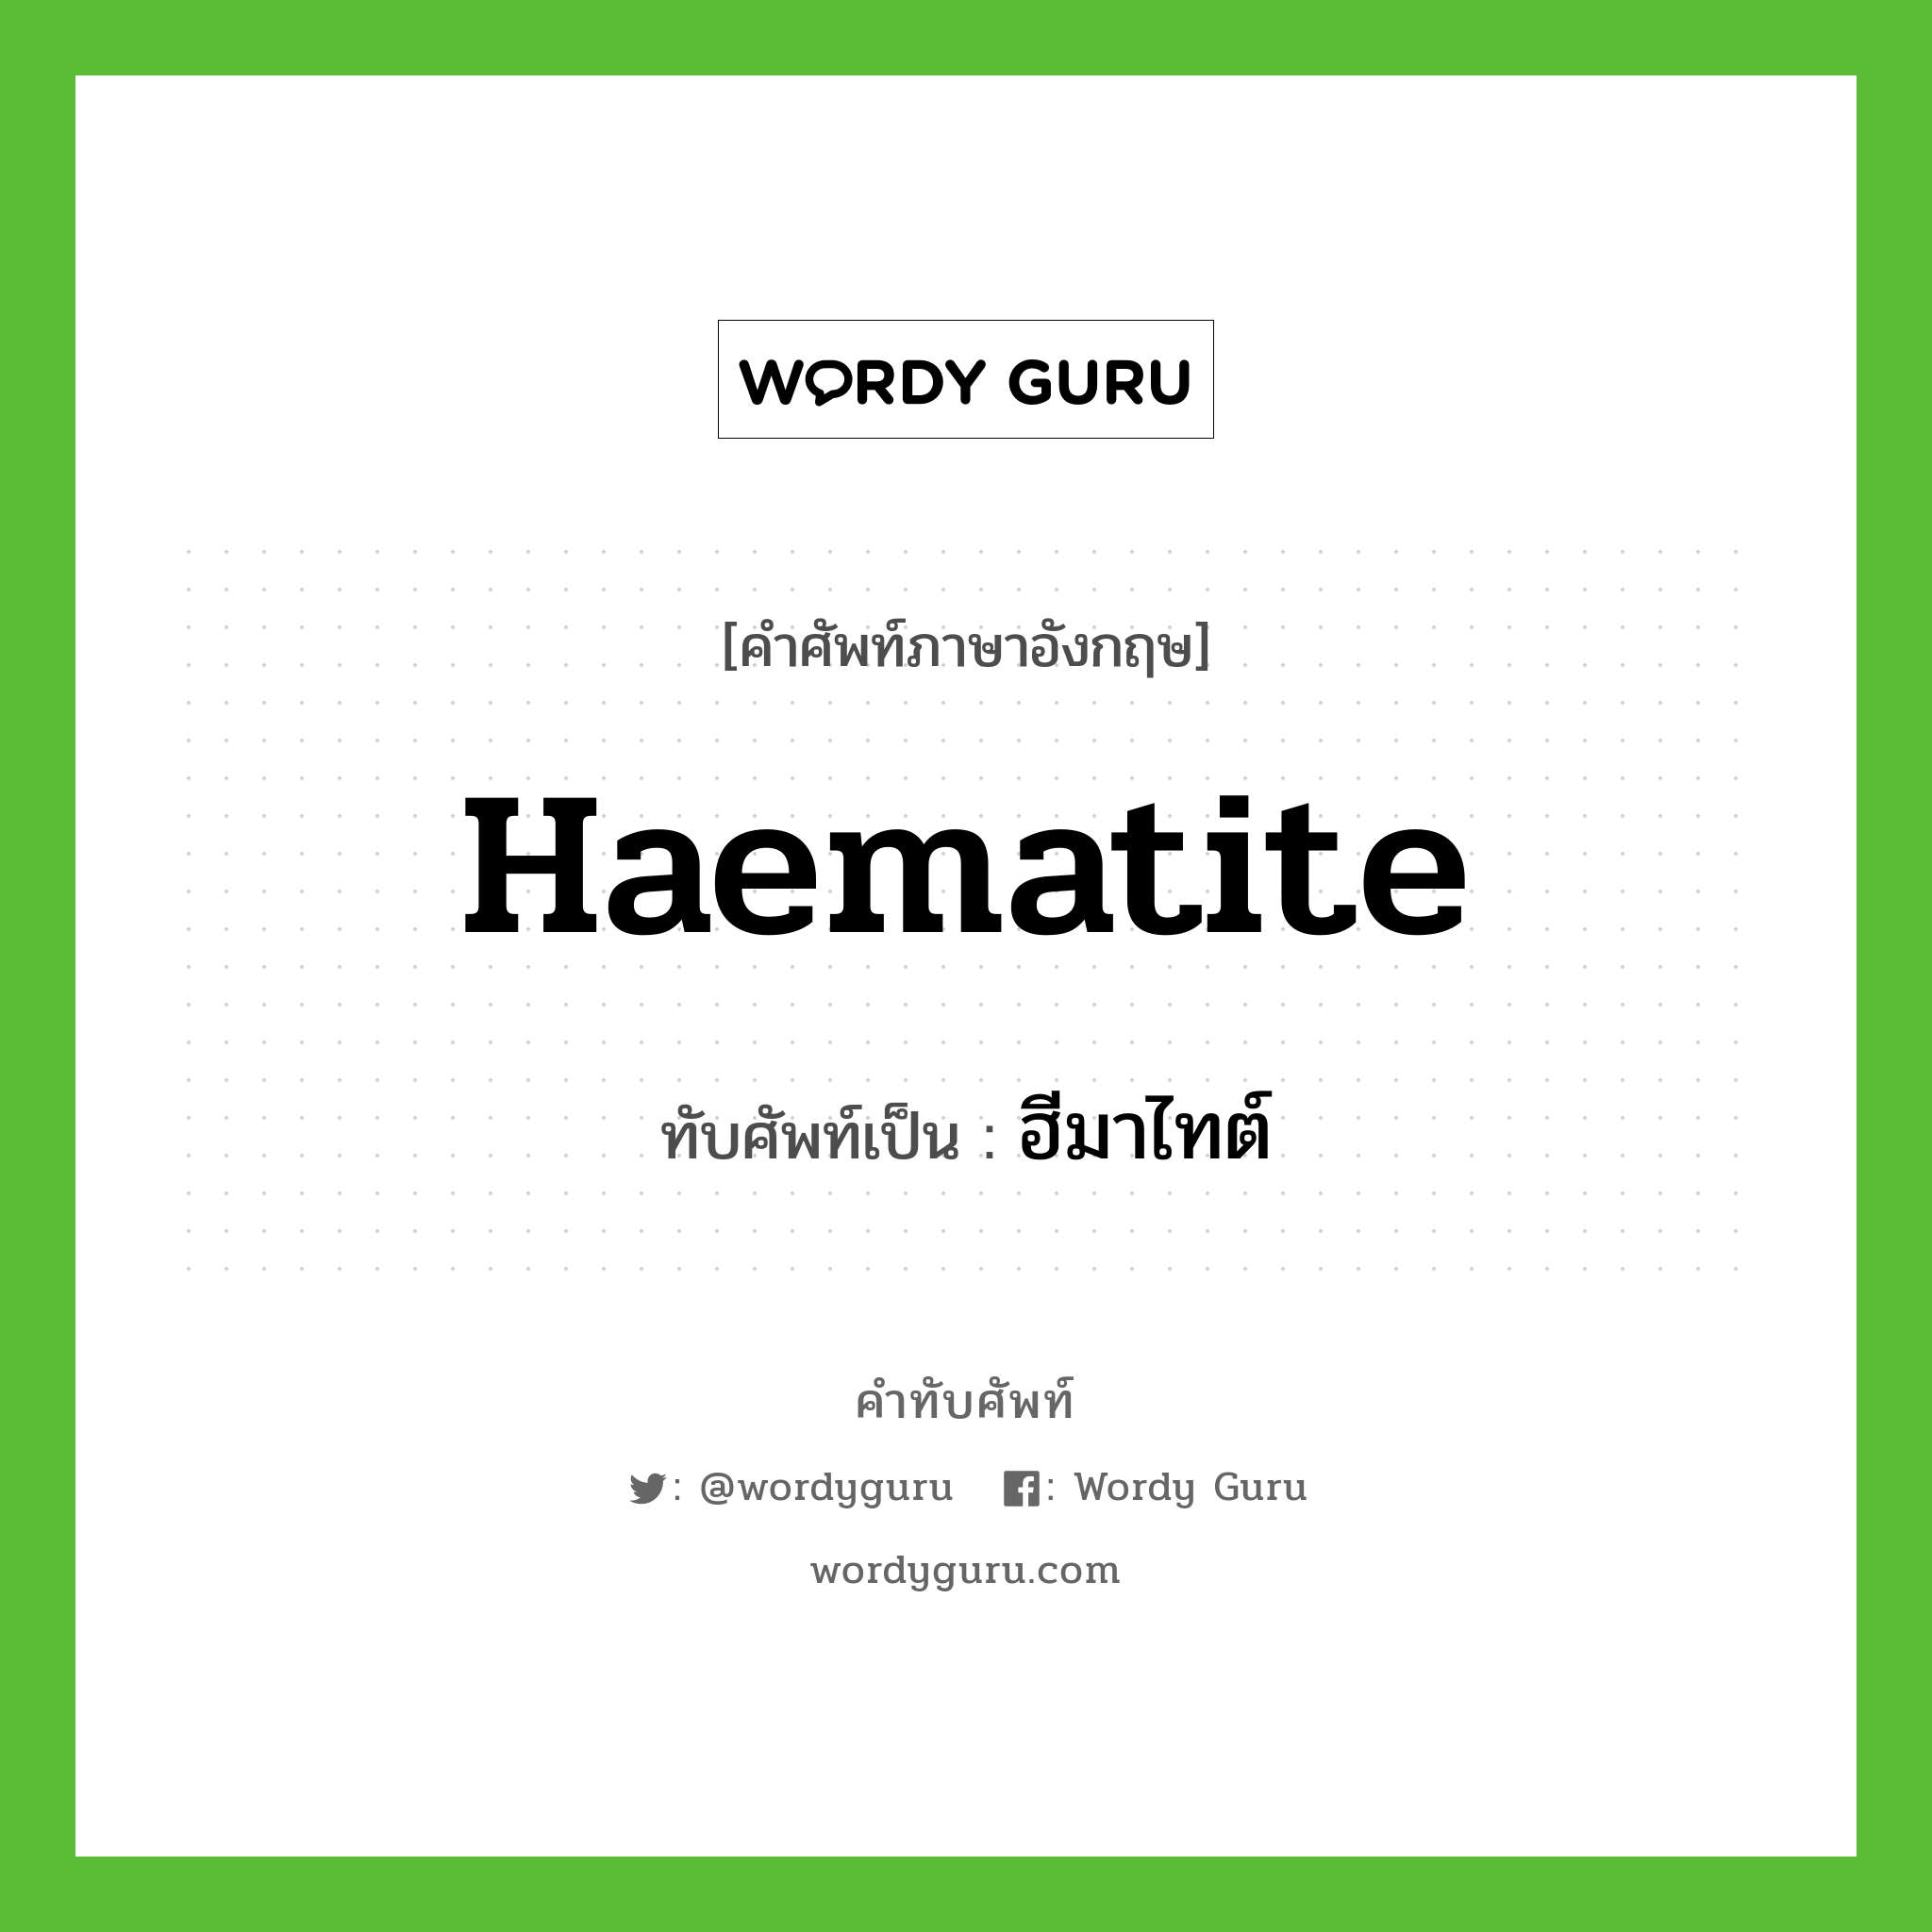 Haematite เขียนเป็นคำไทยว่าอะไร?, คำศัพท์ภาษาอังกฤษ Haematite ทับศัพท์เป็น ฮีมาไทต์